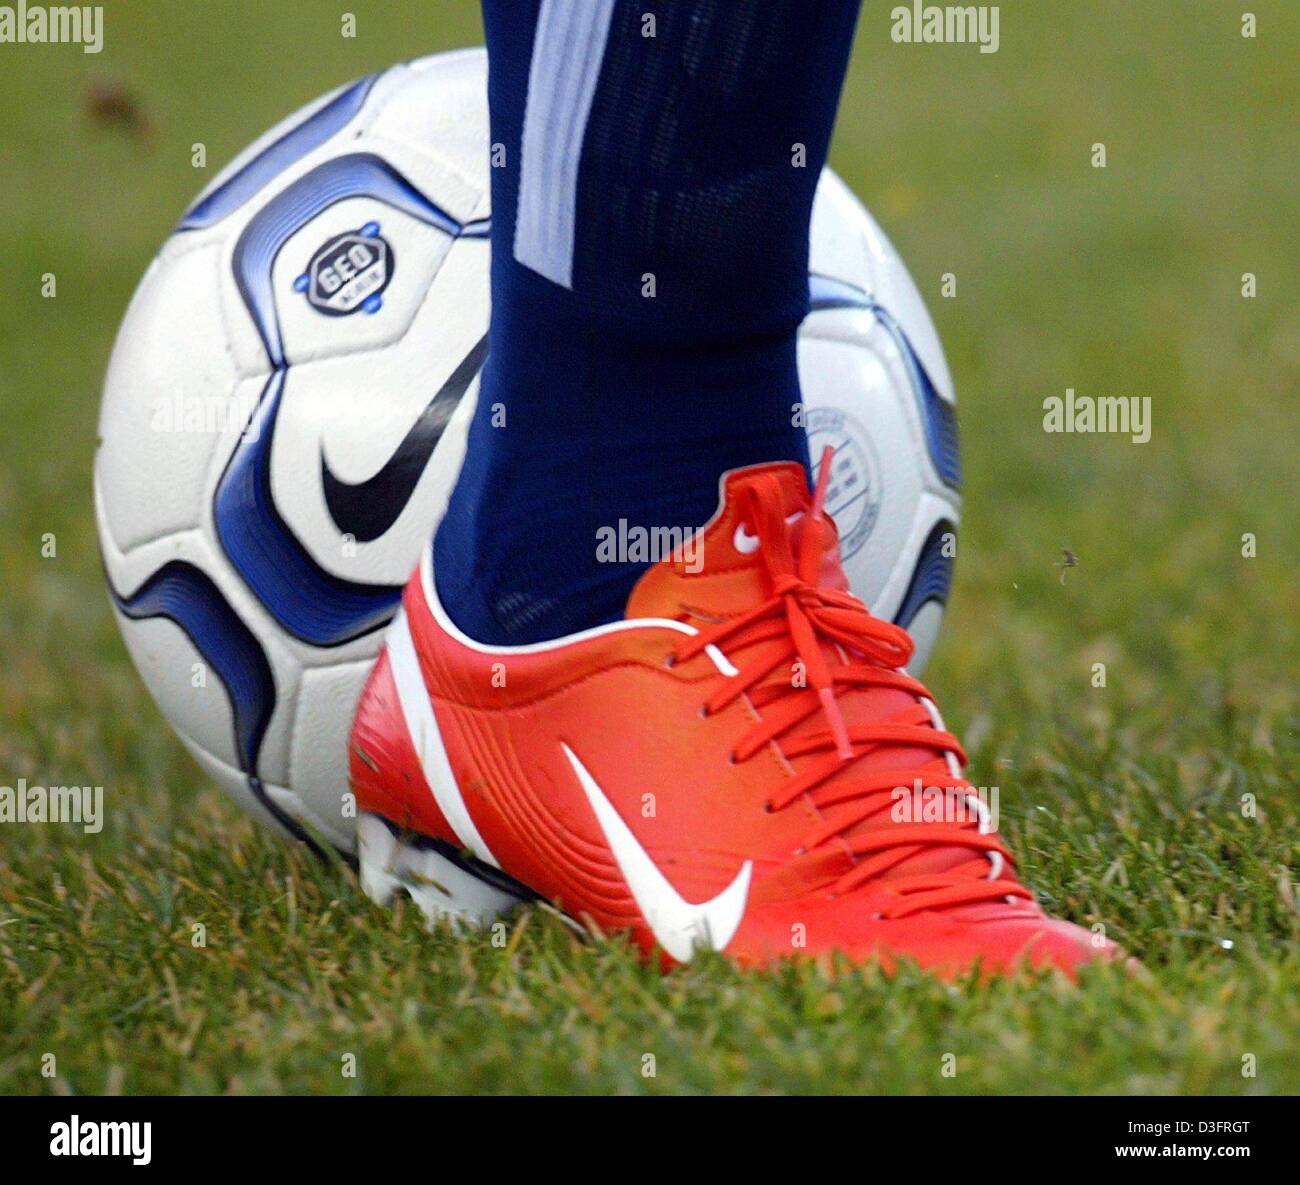 Dpa) - un color naranja Nike fútbol zapatos Nike abarca parte de un balón  de fútbol en un campo de fútbol en Berlín, Alemania, el 8 de febrero de  2003. Marcelinho, un